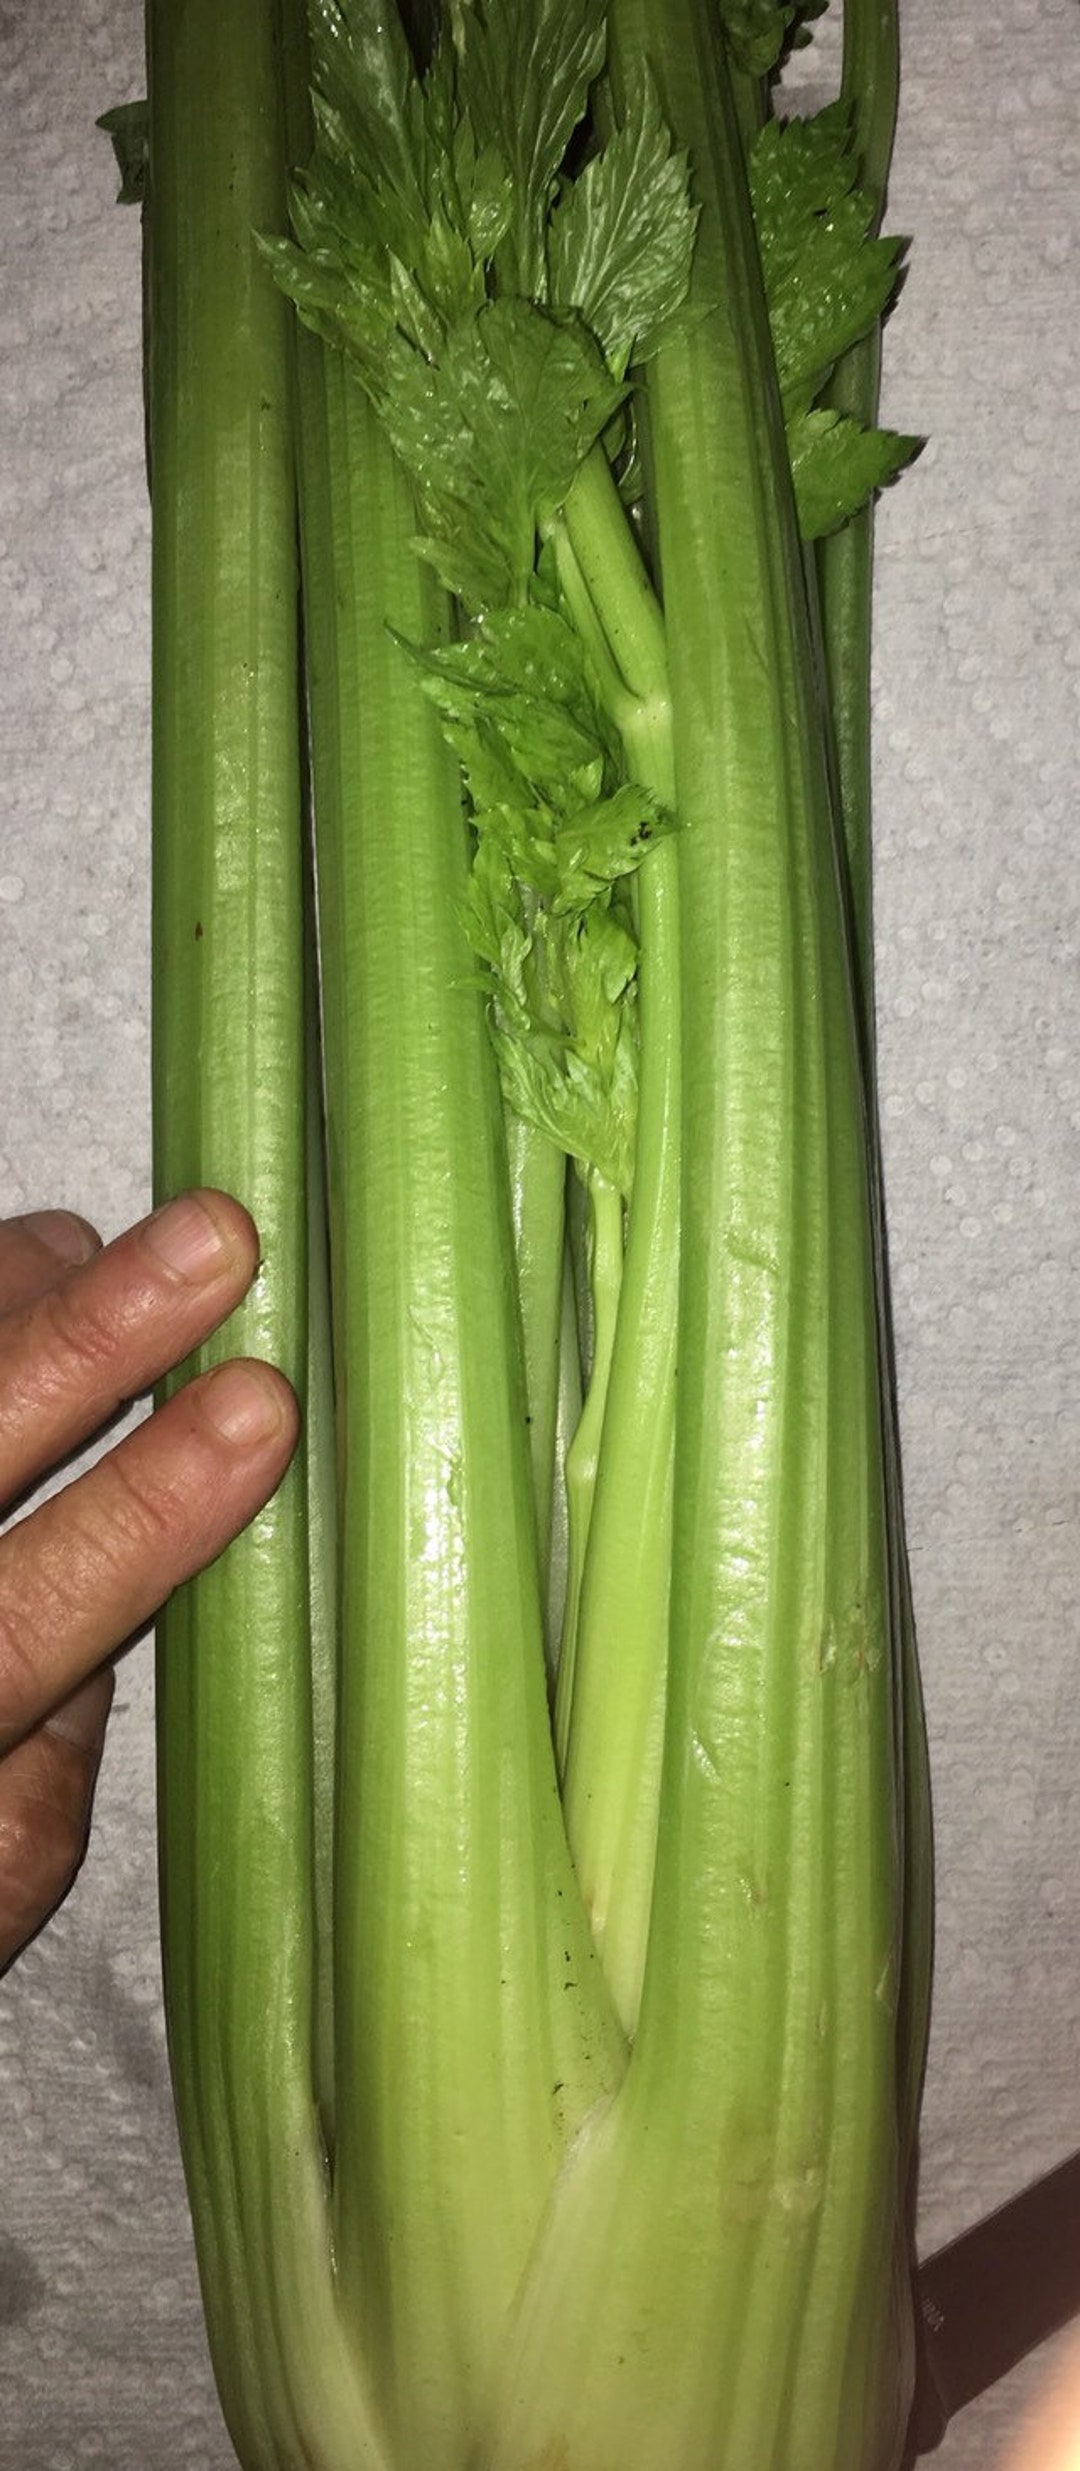 home made celery dildos Porn Photos Hd